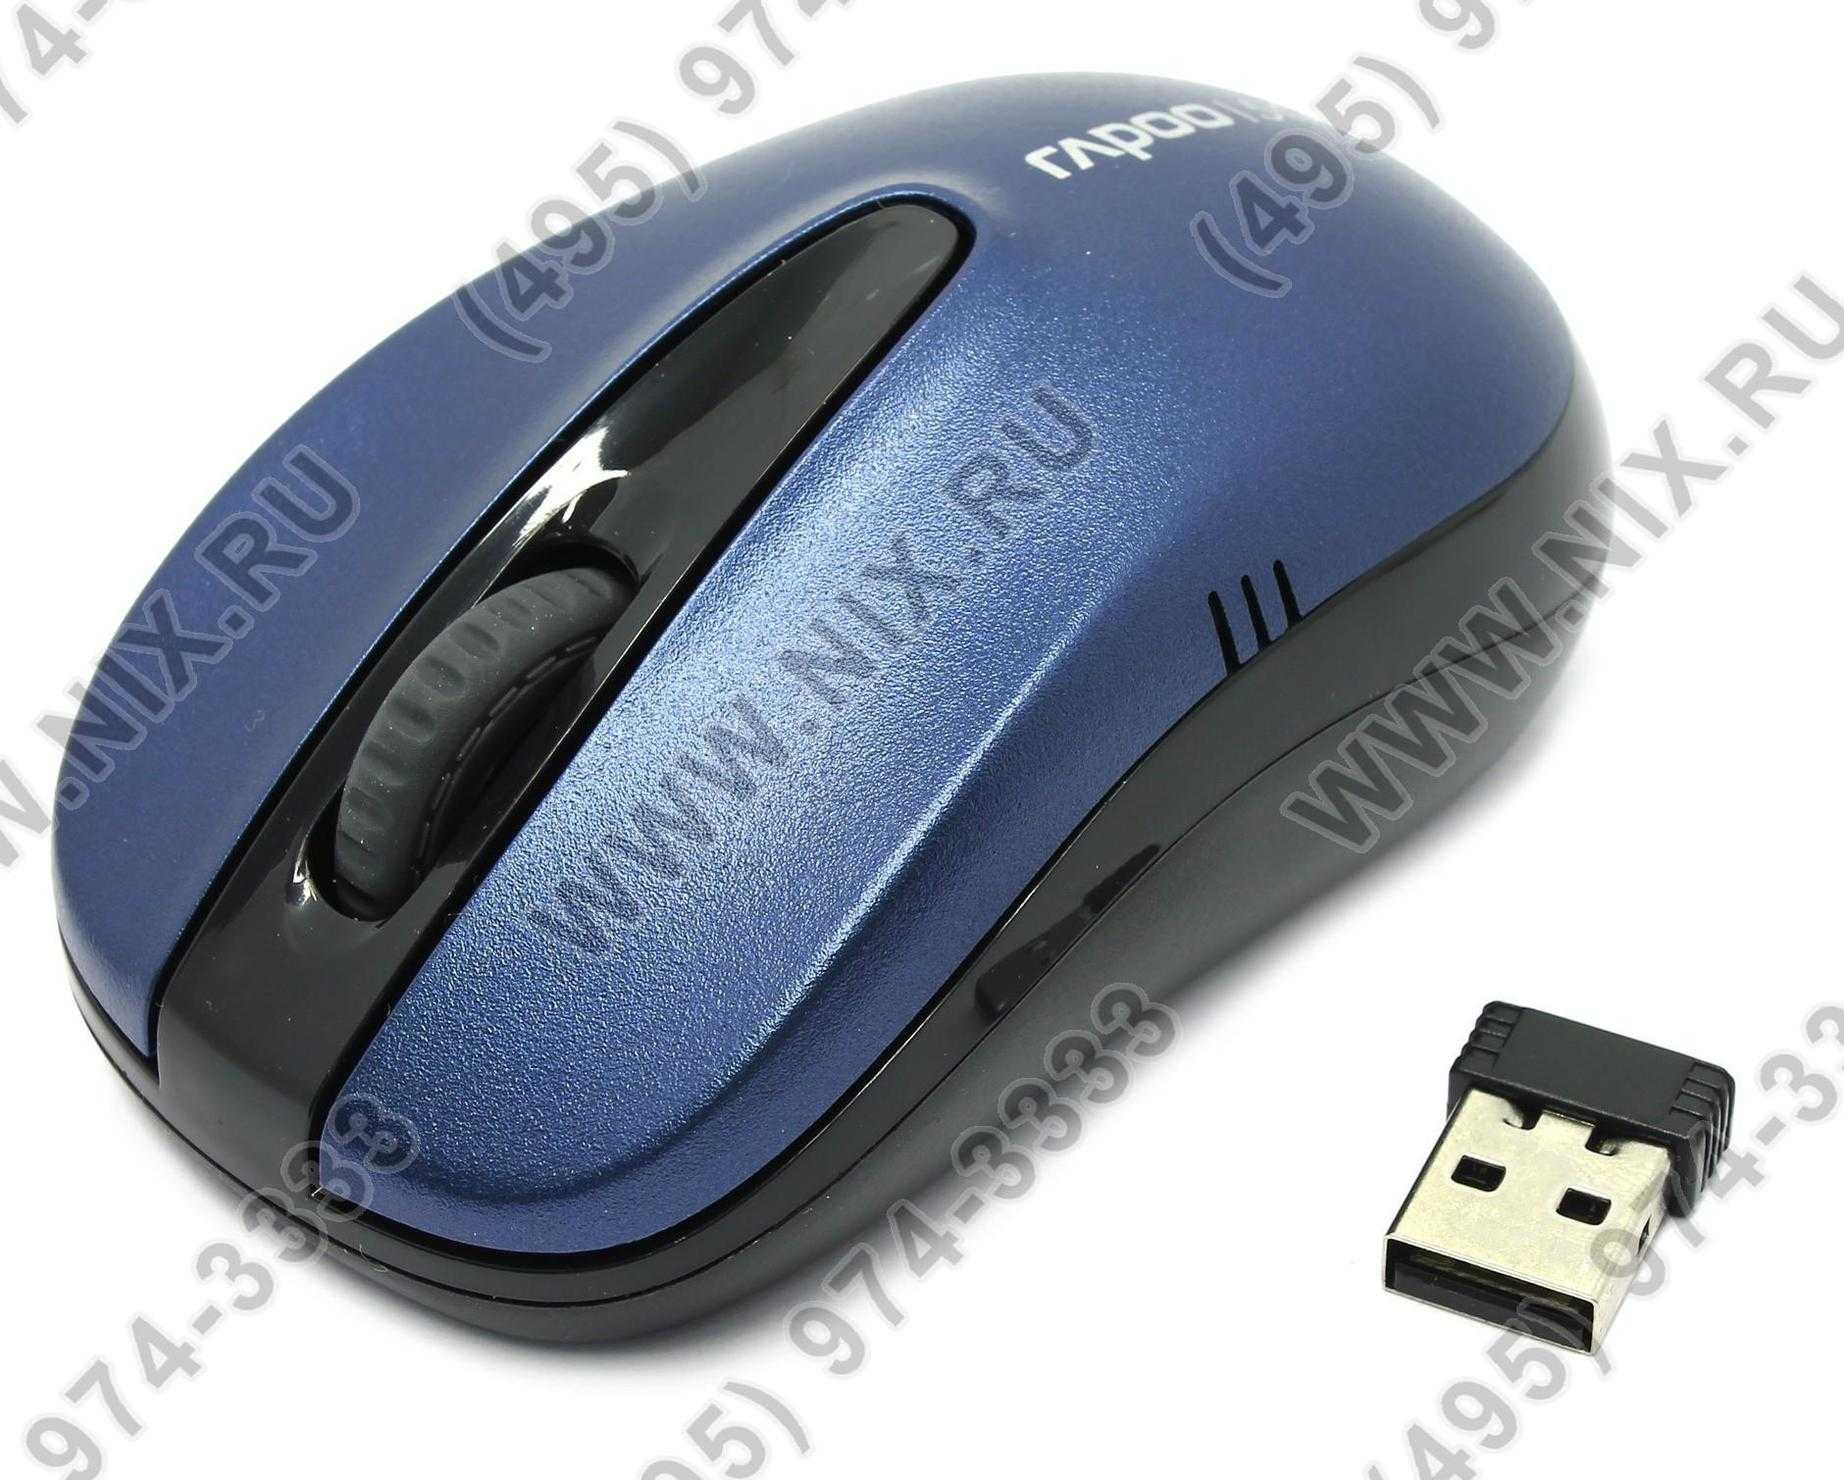 Rapoo wireless optical mouse 1070p blue usb купить - ростов-на-дону по акционной цене , отзывы и обзоры.